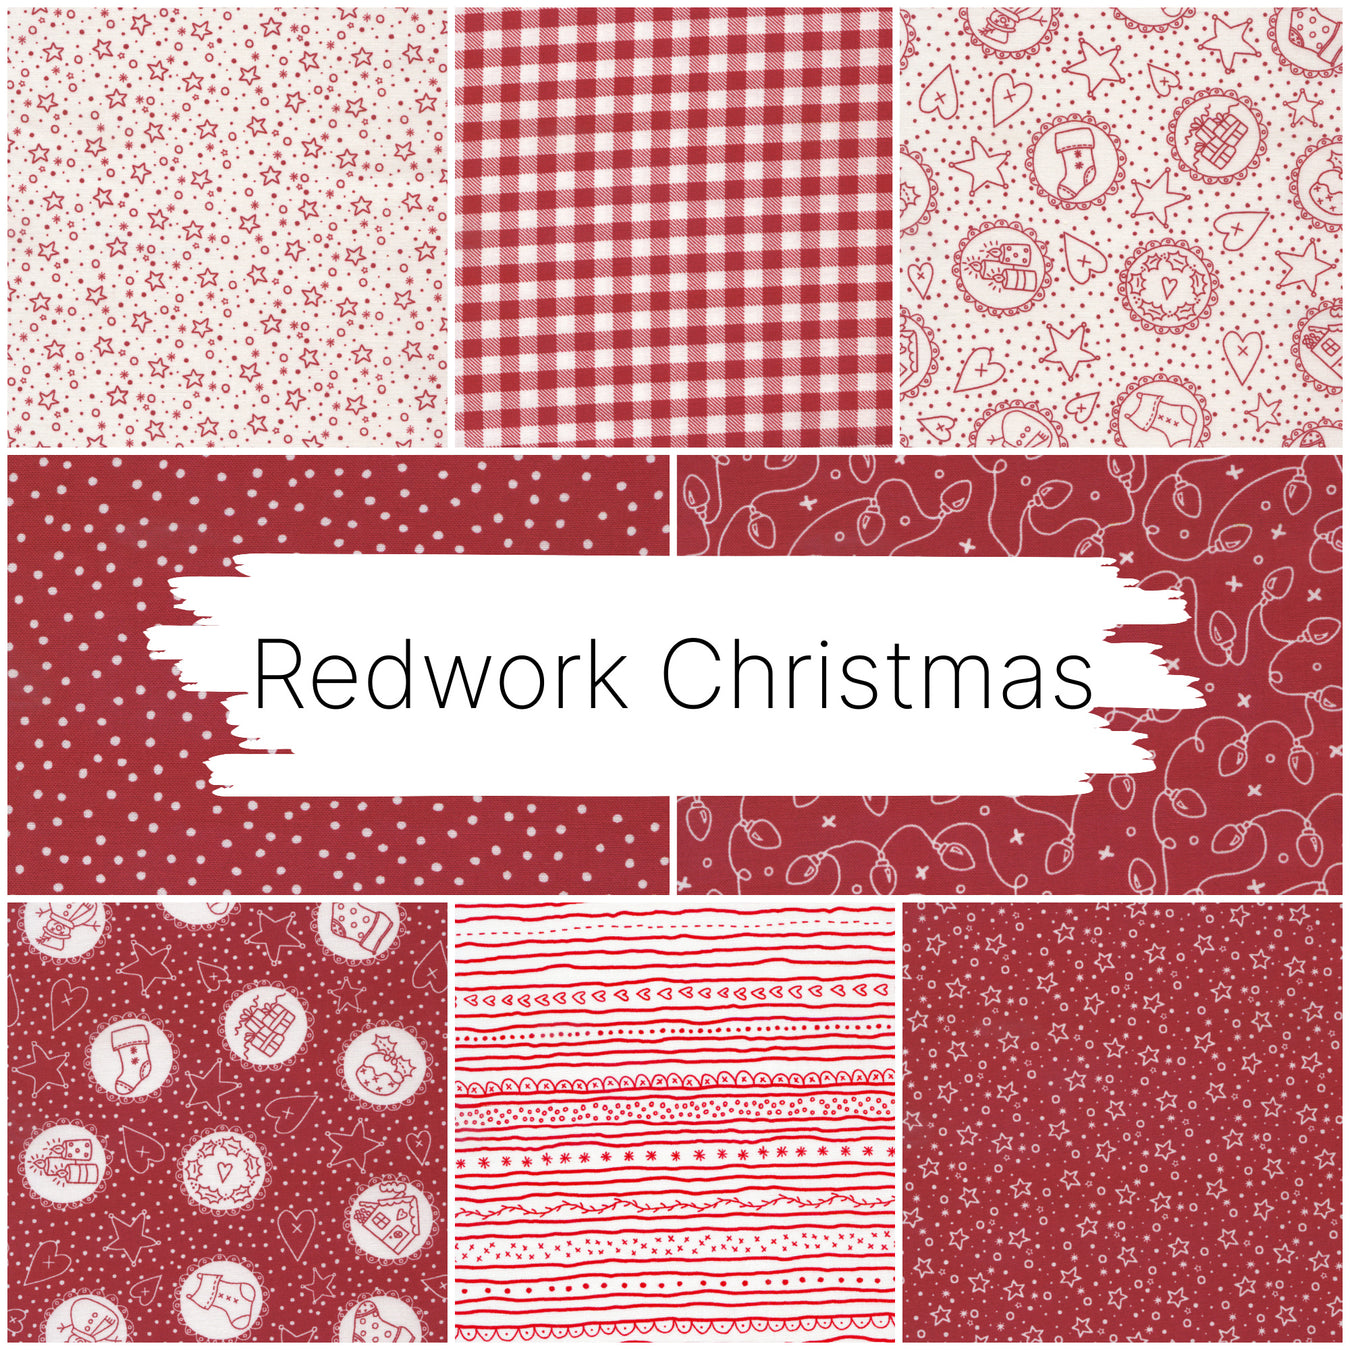 Redwork Christmas